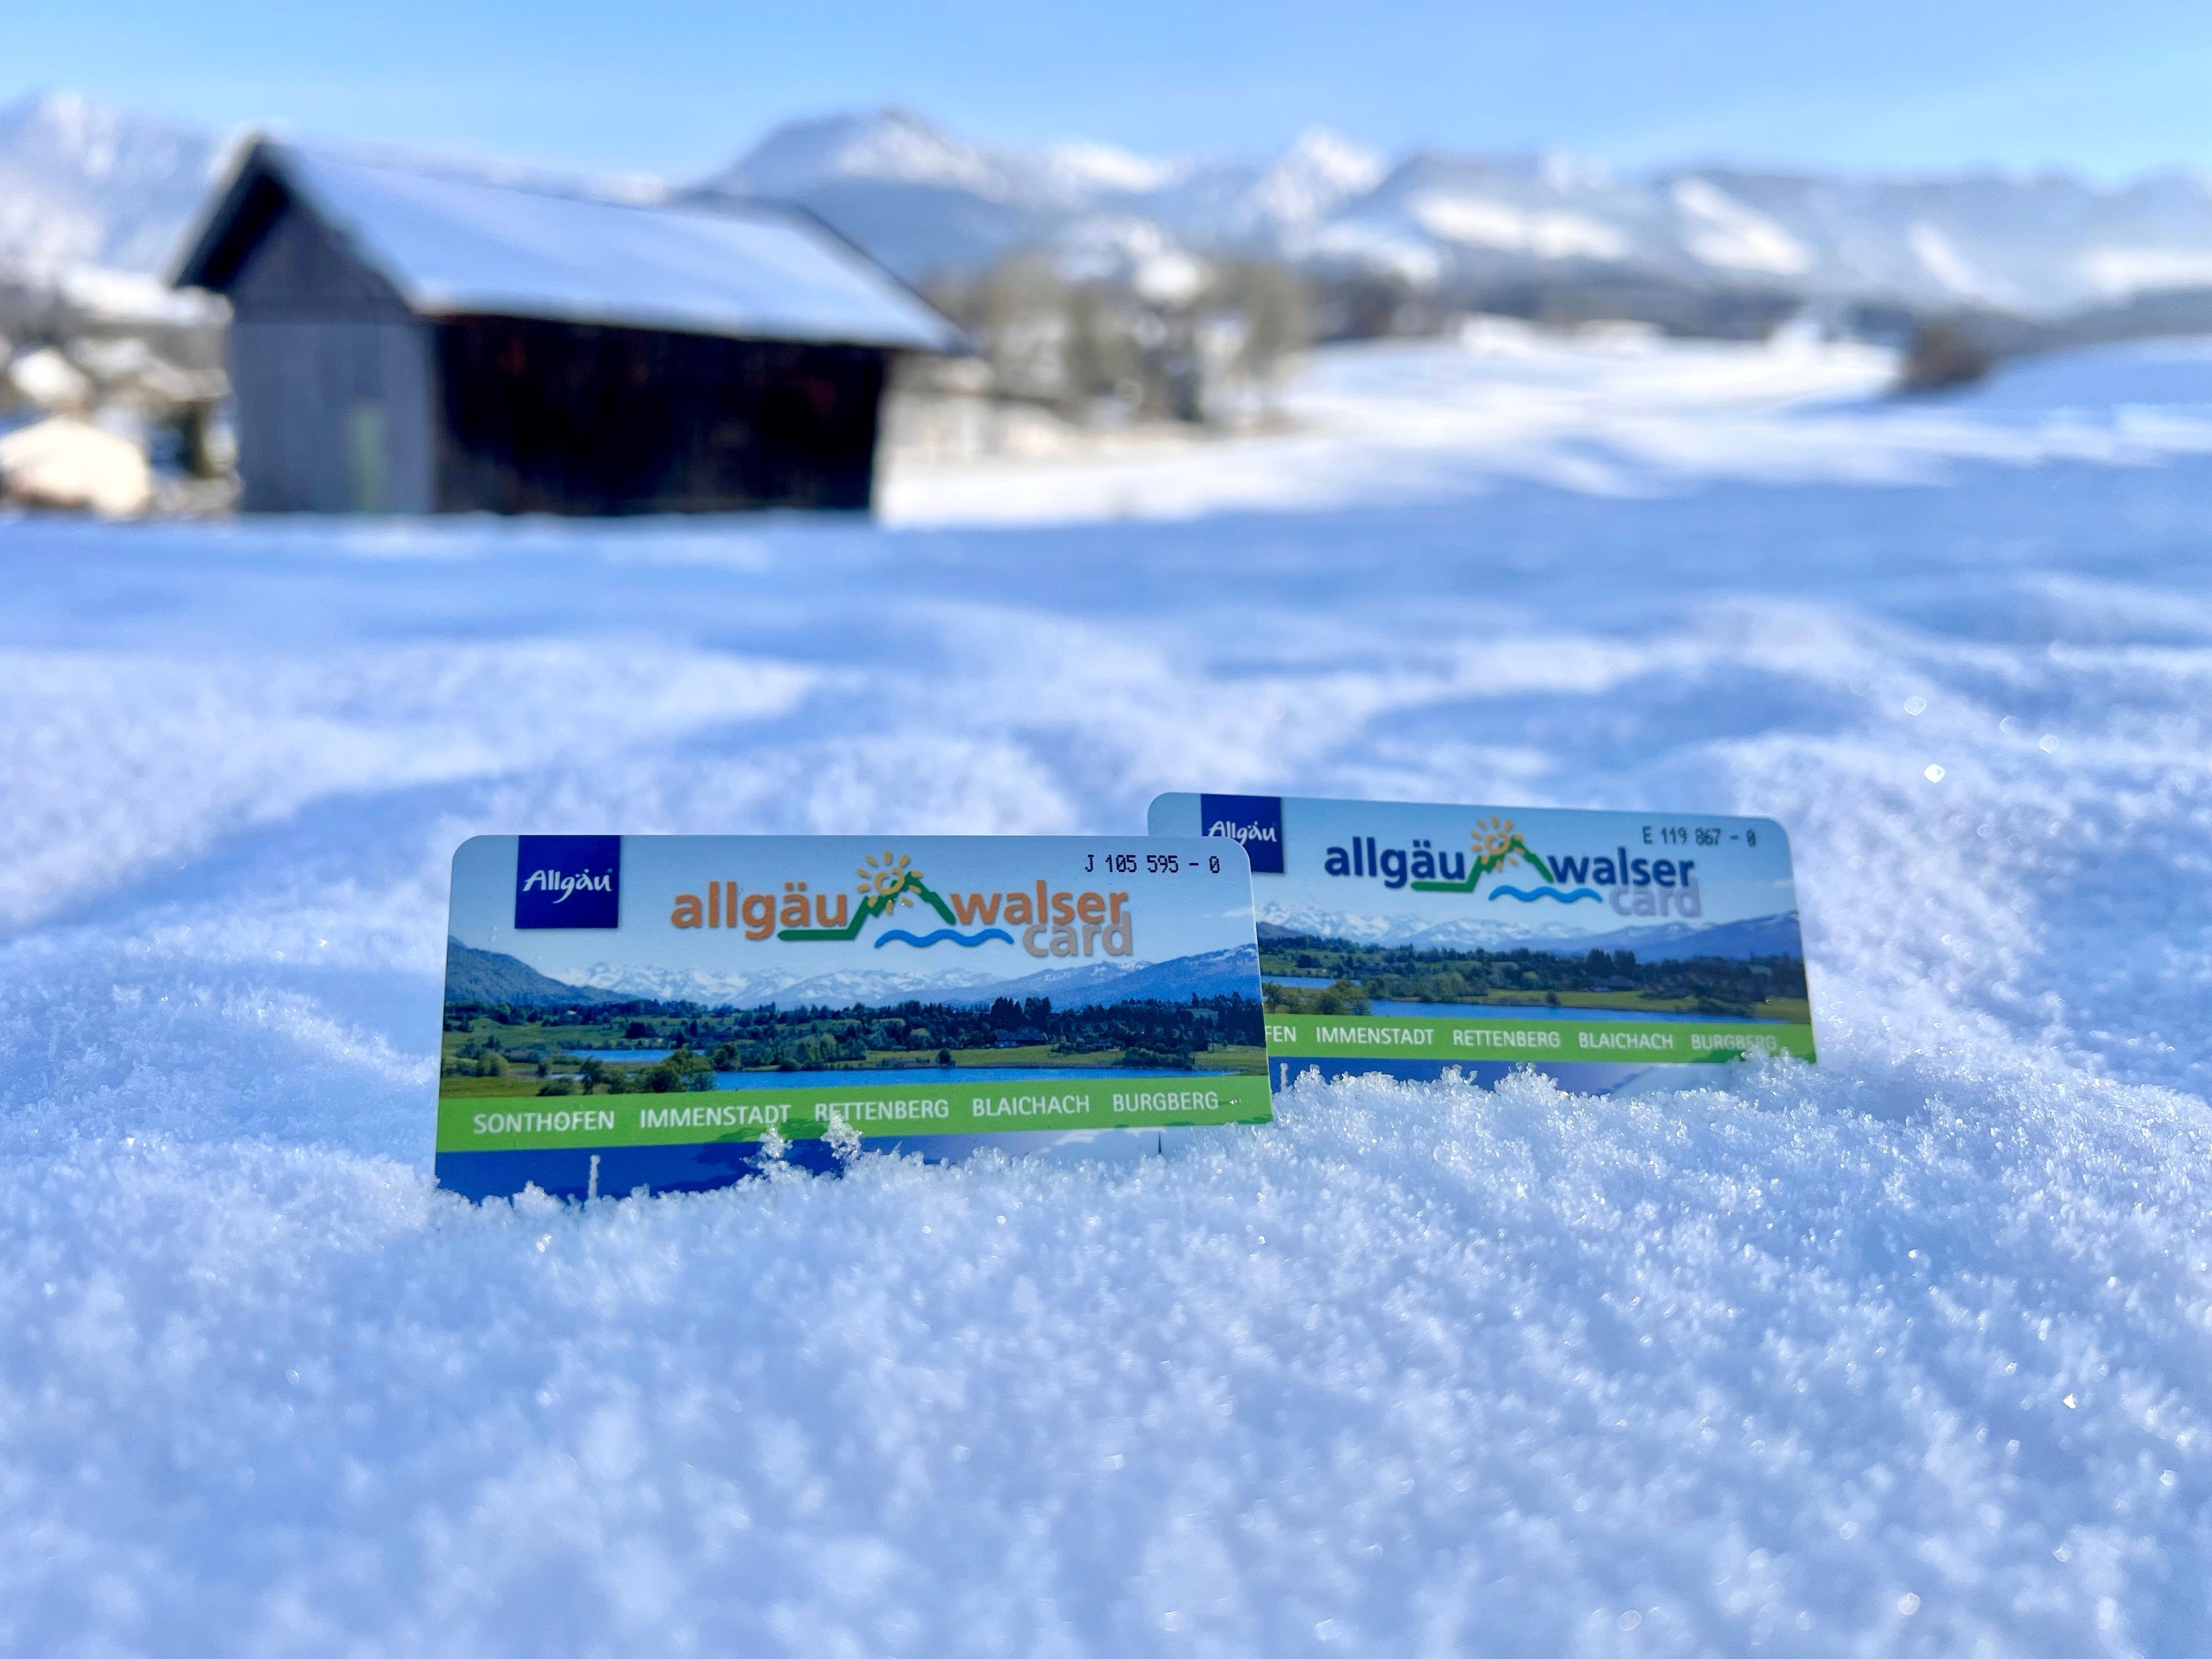 Im Vordergrund sind zwei Allgäu-Walser-Cards der Alpsee-Grünten Region im Schnee zu sehen. Im Hintergrund befindet sich eine schneebedeckte Hütte und die Allgäuer Alpen.